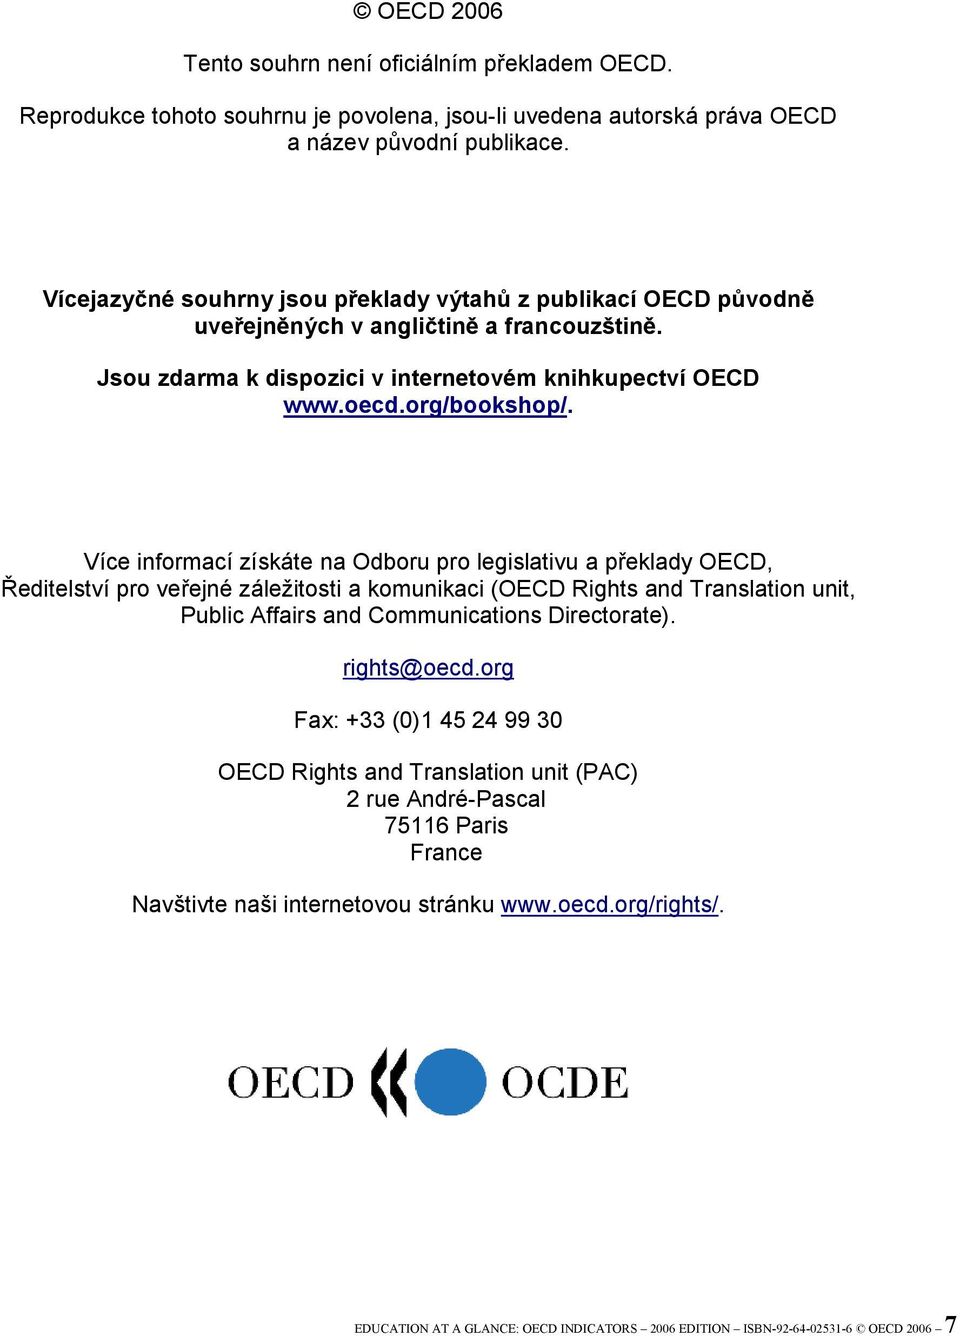 Více informací získáte na Odboru pro legislativu a překlady OECD, Ředitelství pro veřejné záležitosti a komunikaci (OECD Rights and Translation unit, Public Affairs and Communications Directorate).